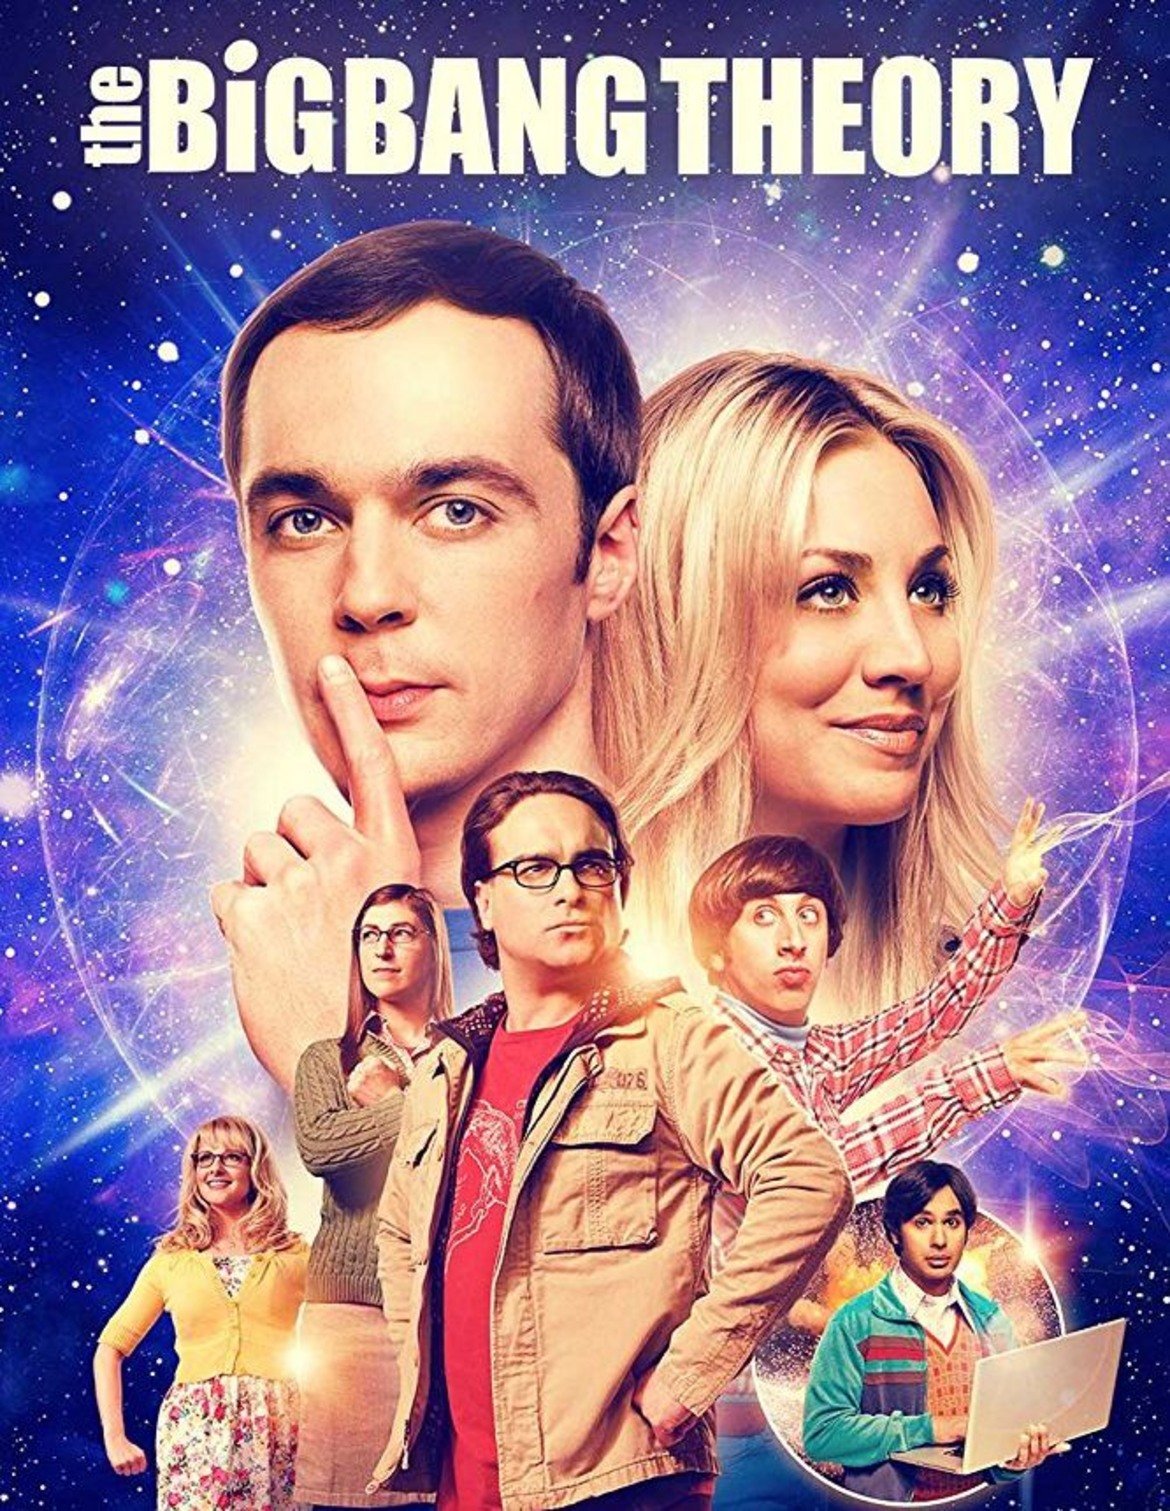 The Big Bang Theory / Теория на Големия взрив
Сезон: 12 (последен)
Телевизия: CBS
Премиера: 24 септември